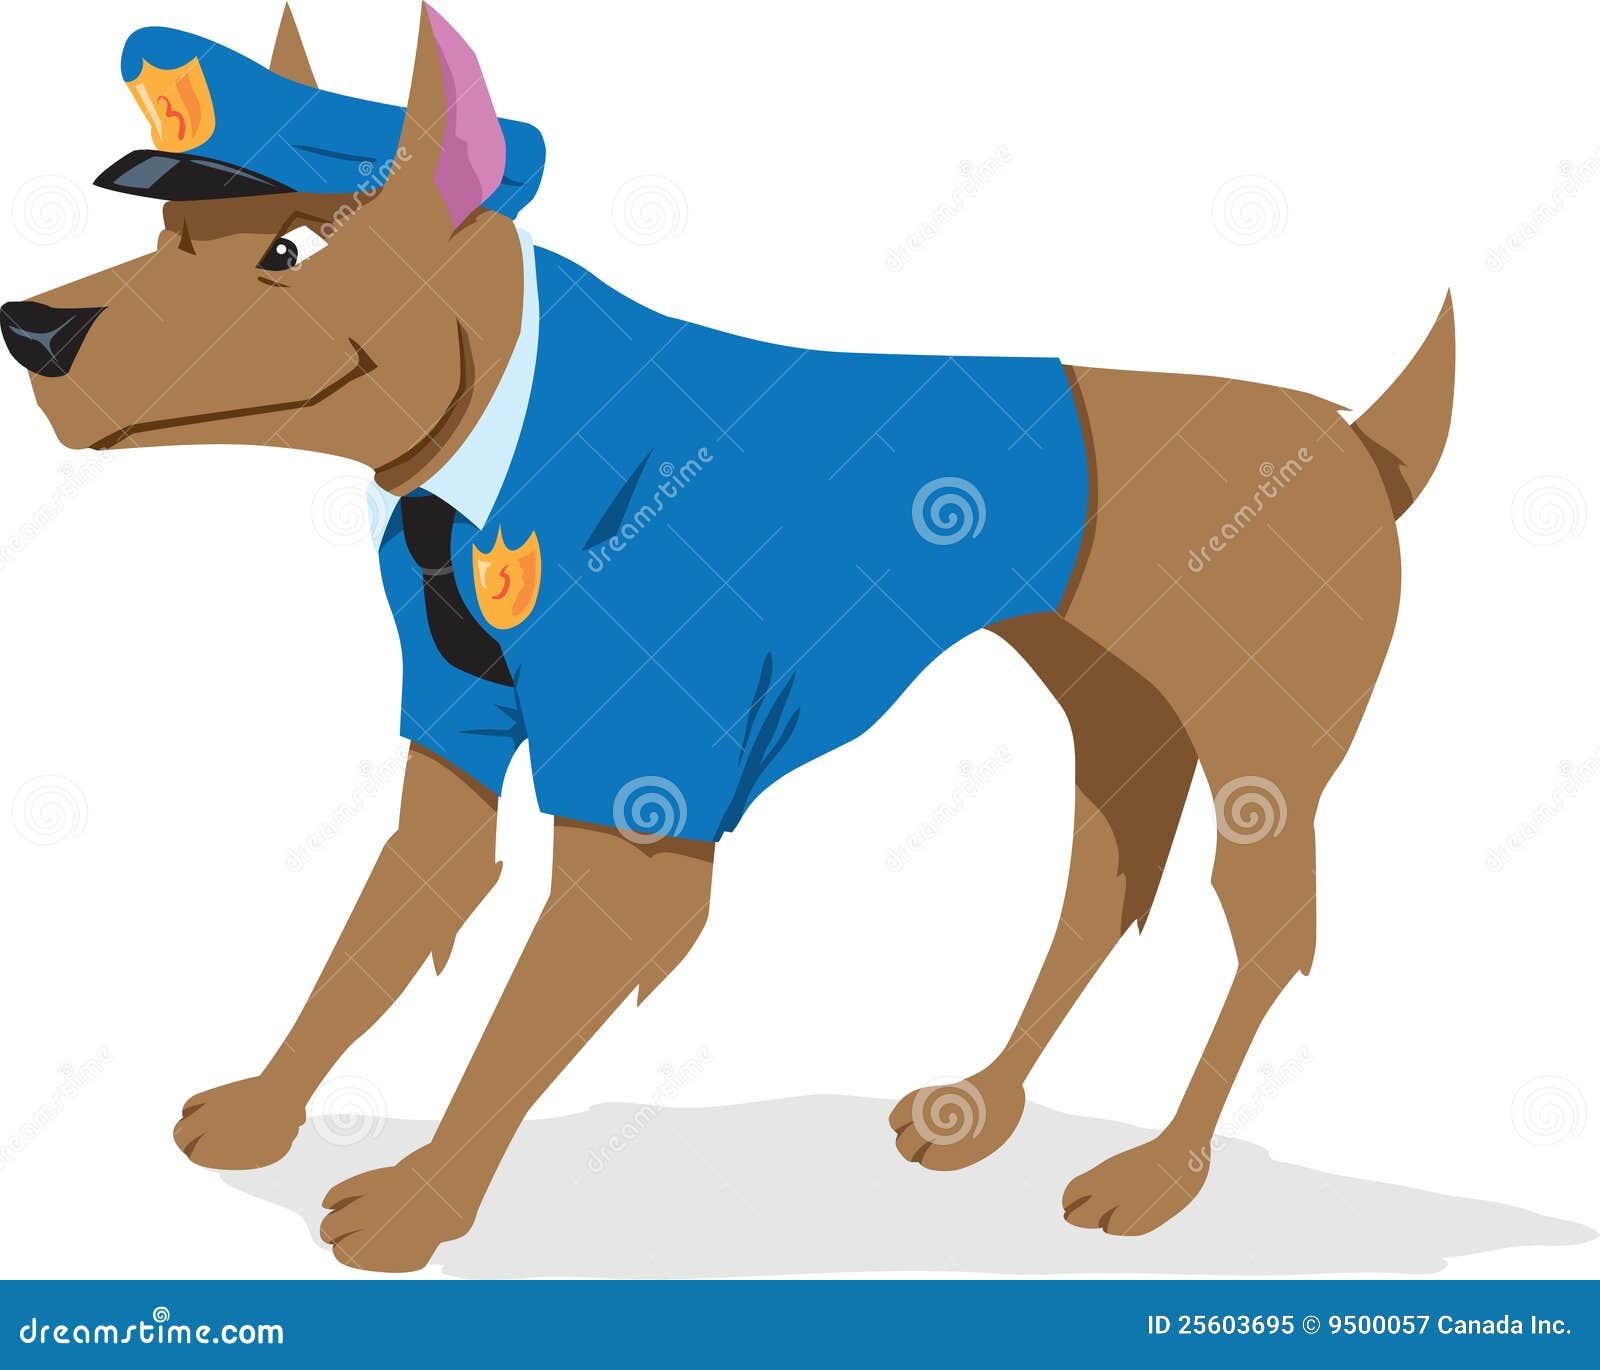 身着制服的警察与狗站在一起插画图片素材_ID:162898490-Veer图库